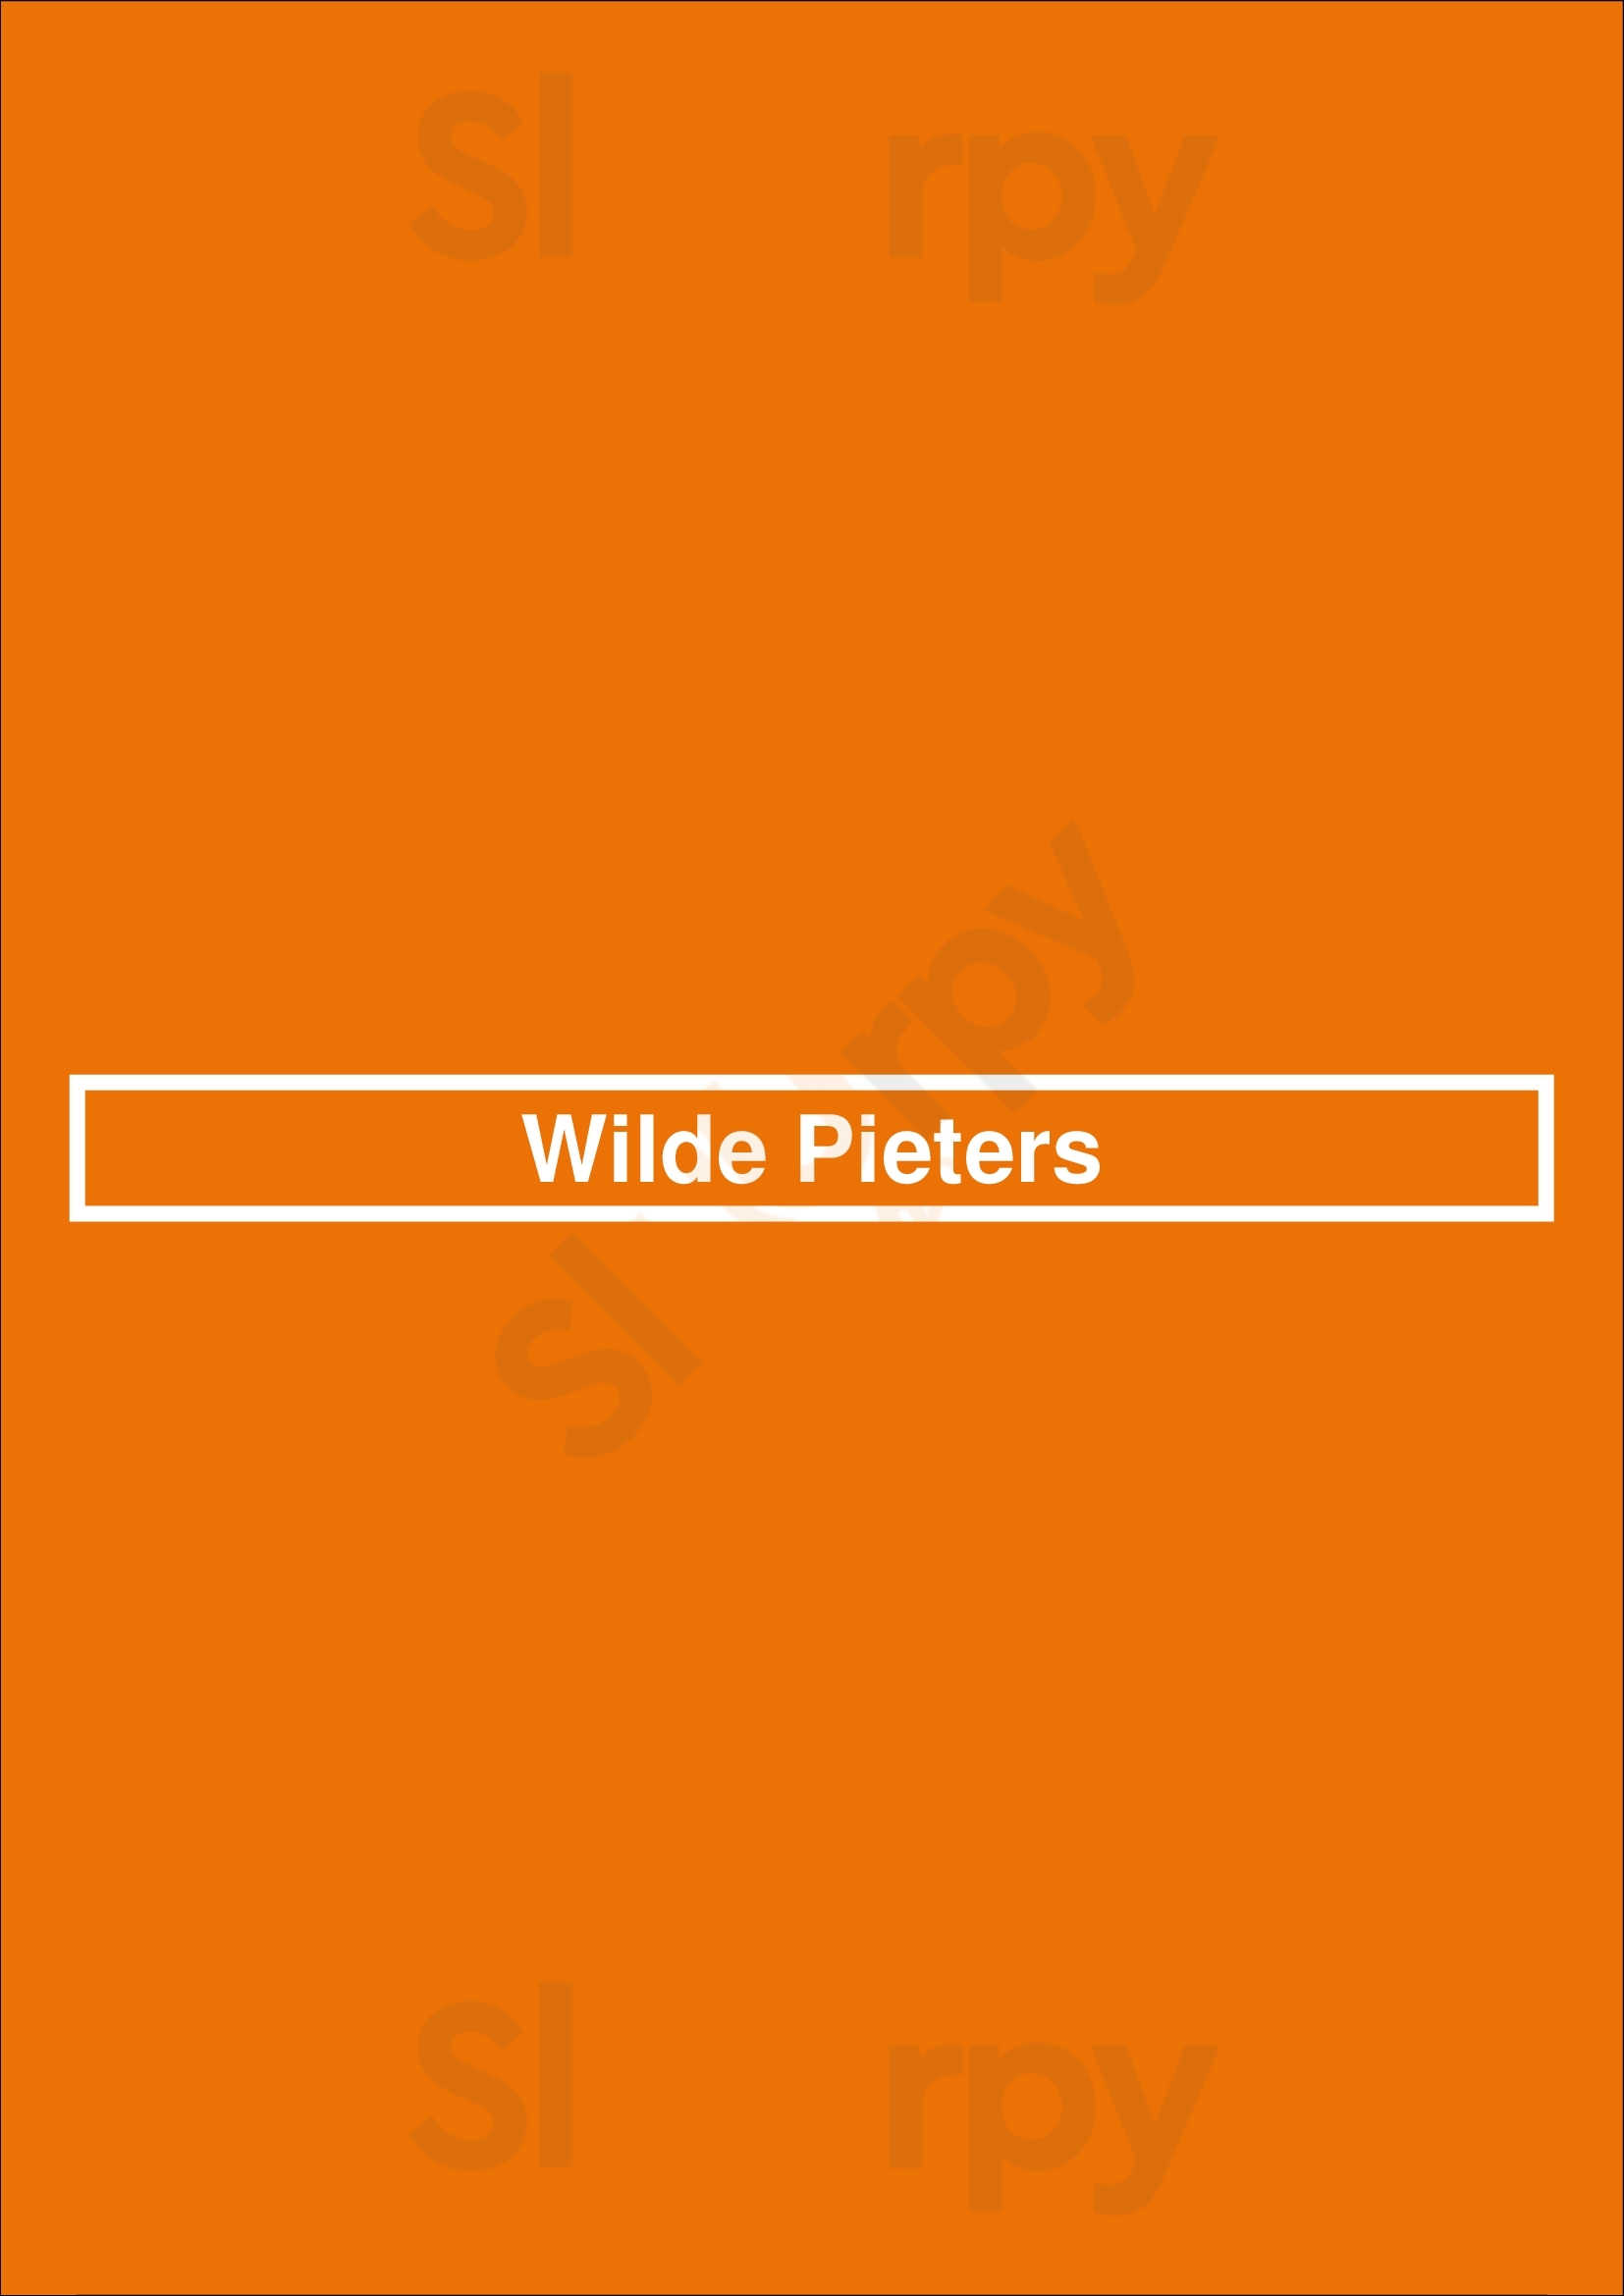 Wilde Pieters Apeldoorn Menu - 1